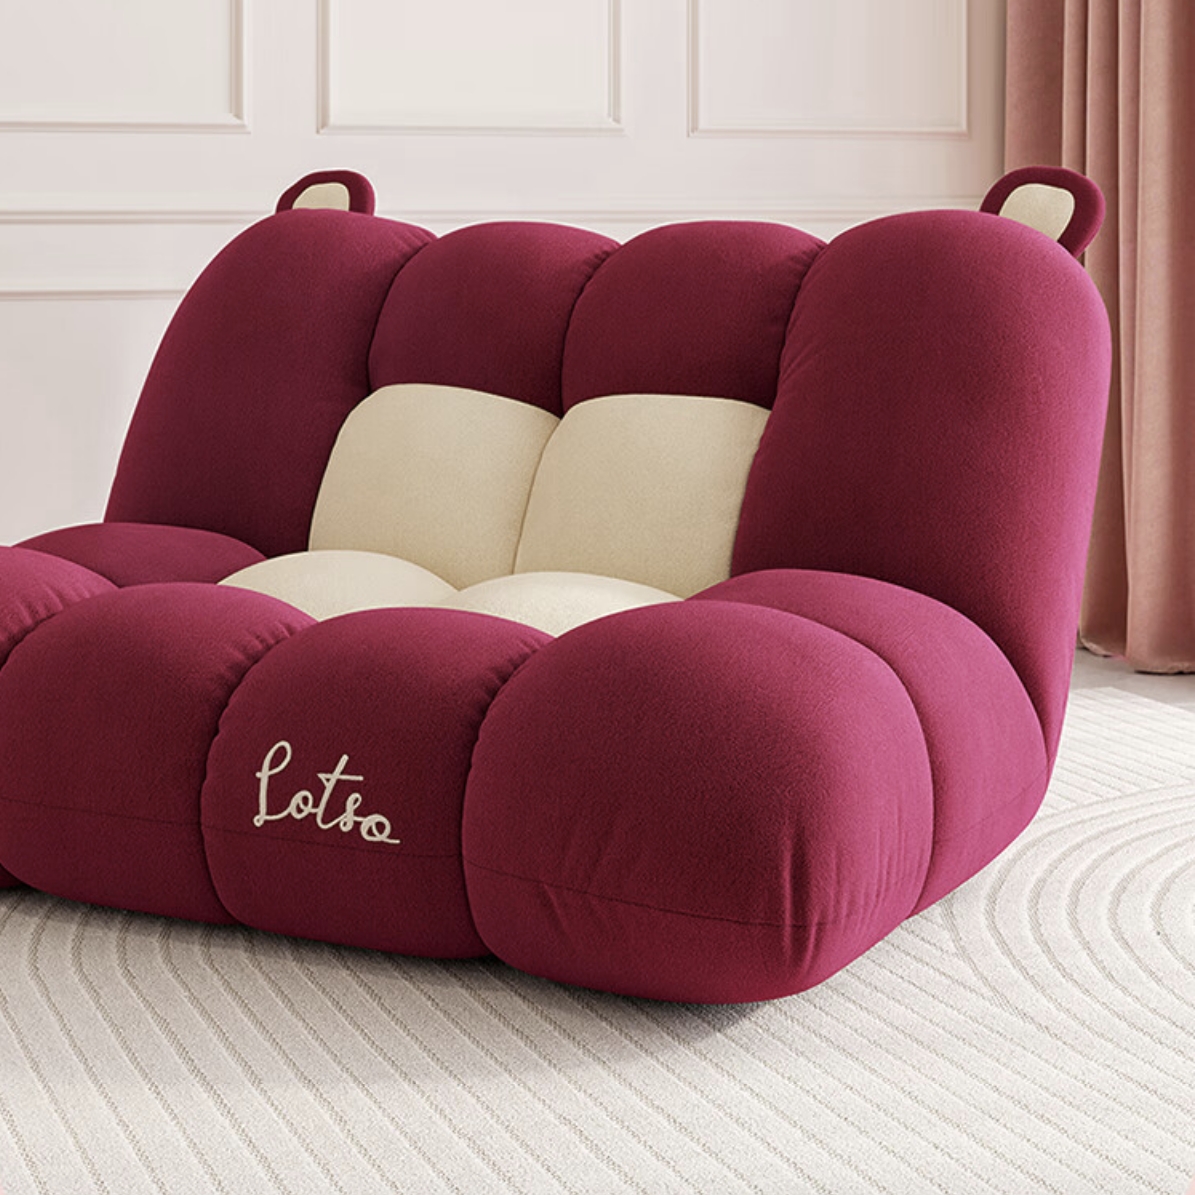 QuanU 全友 118007 皮克斯草莓熊系列 甜莓朵朵可叠沙发床+布艺抱枕 2369元